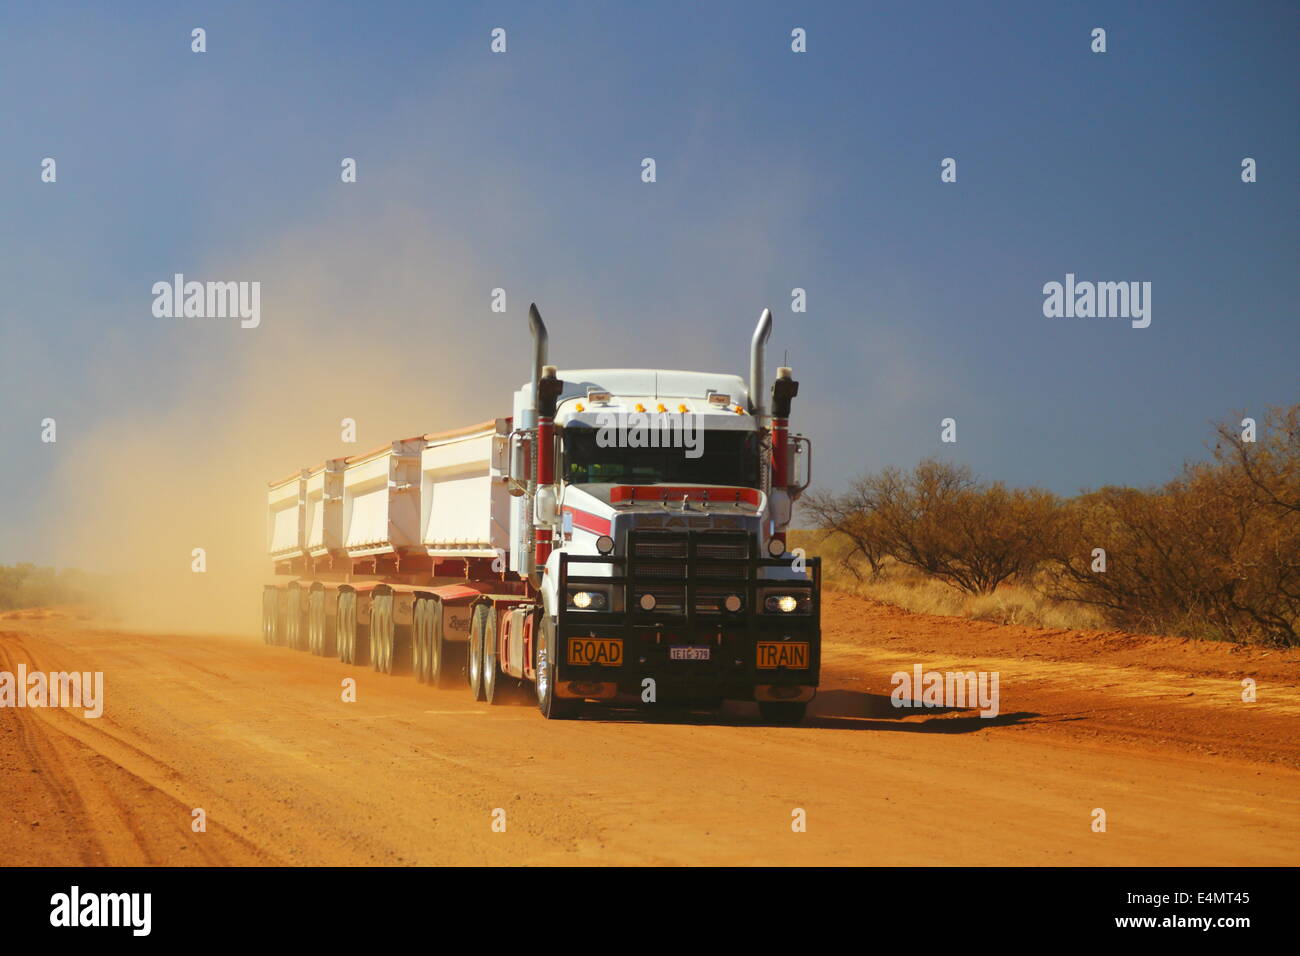 A roadtrain truck transports a load along a dusty dirt road in Western Australia. Stock Photo